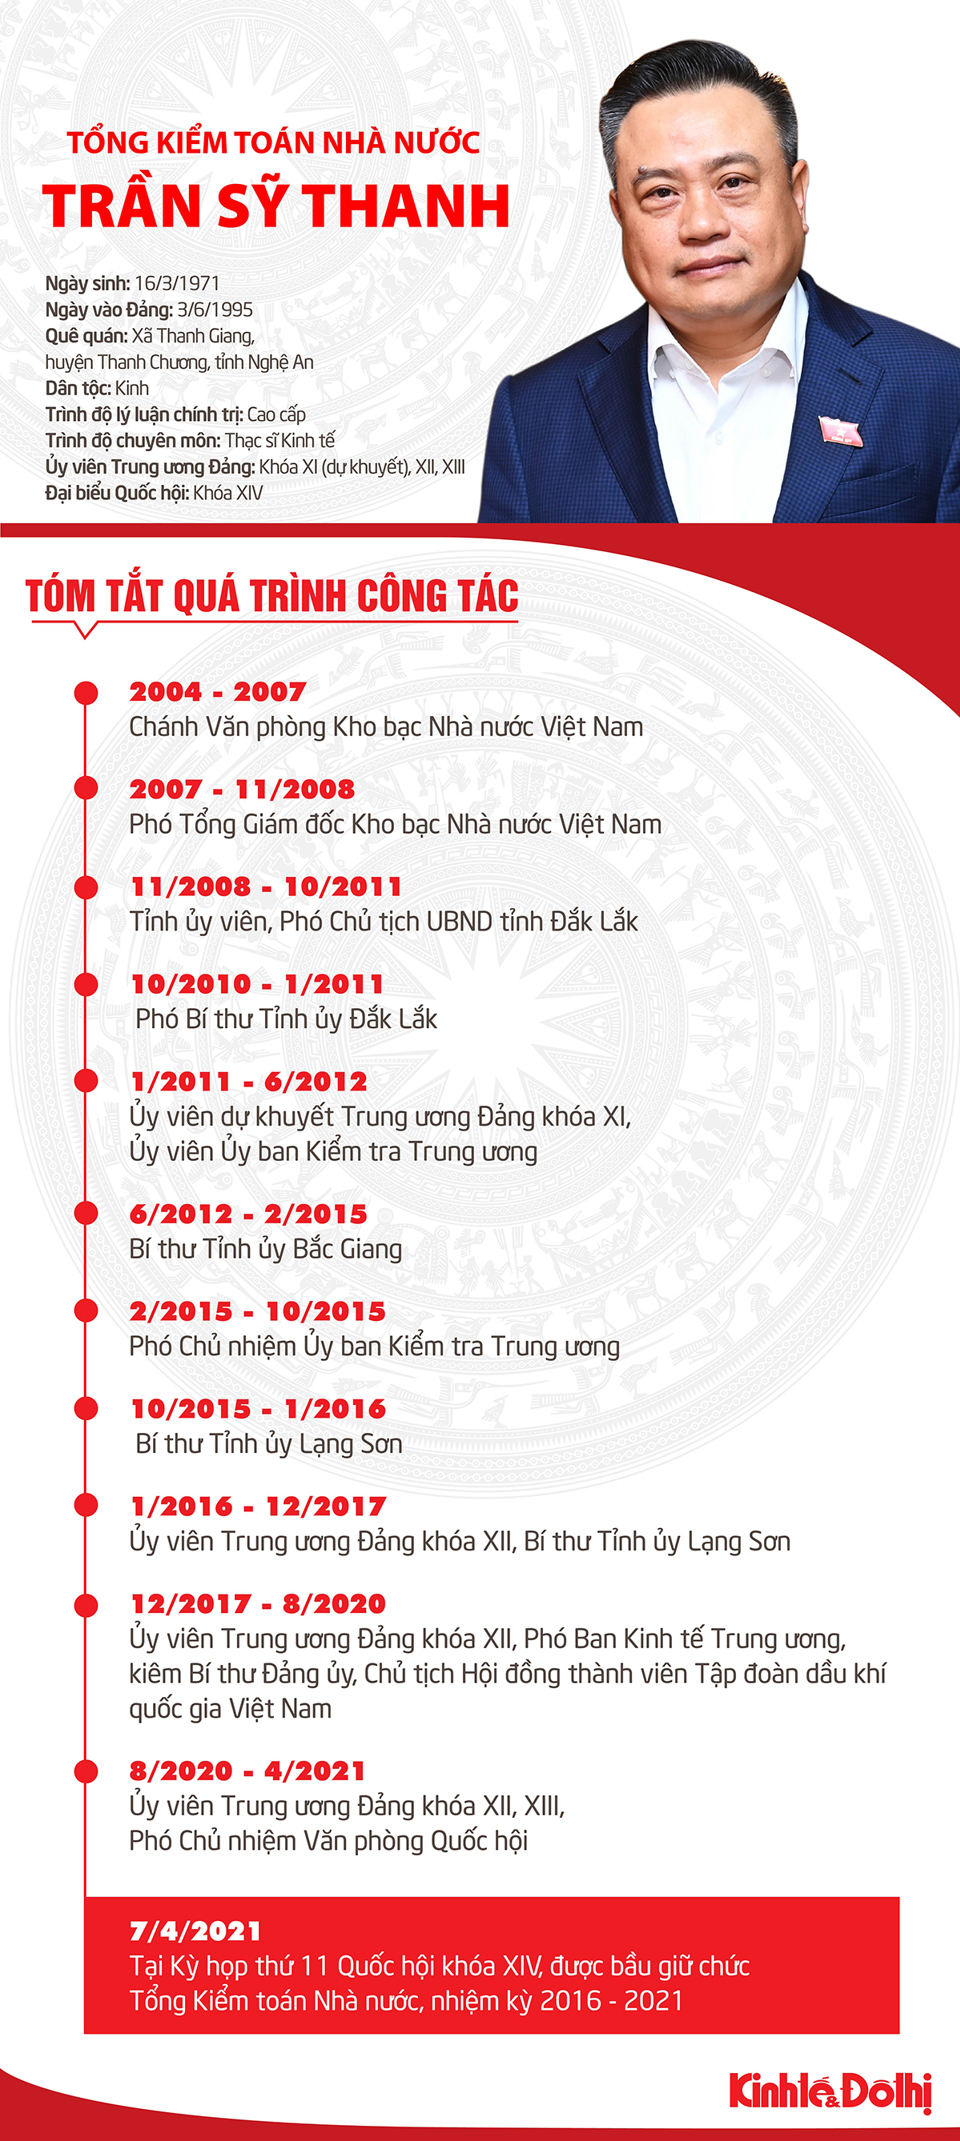 [Infographic] Chân dung tân Tổng Kiểm toán Nhà nước Trần Sỹ Thanh - Ảnh 1